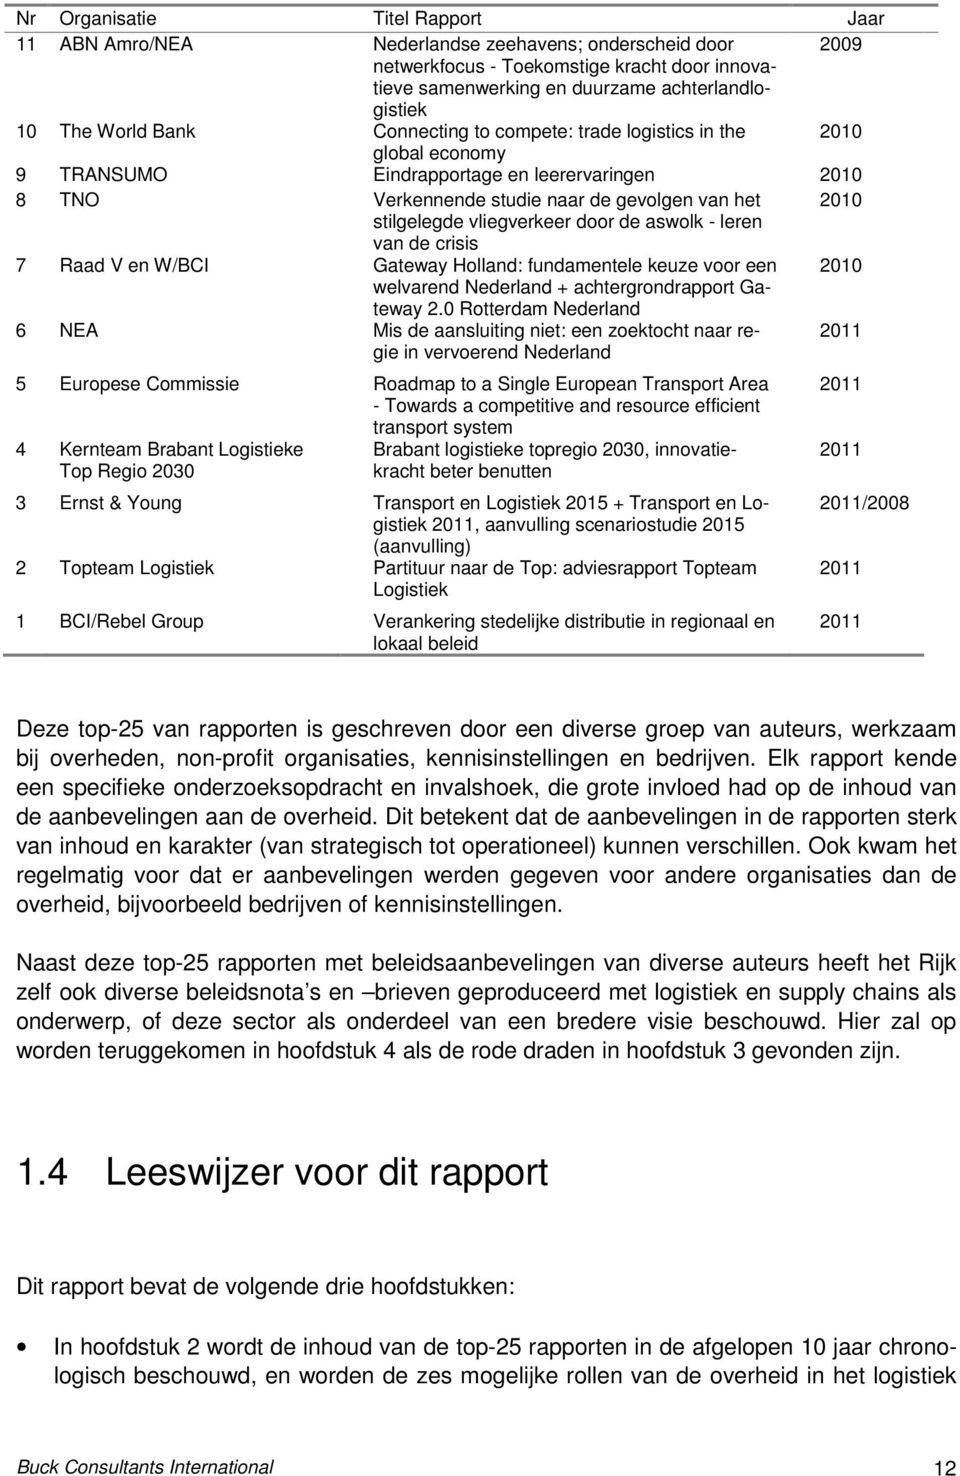 vliegverkeer door de aswolk - leren van de crisis 7 Raad V en W/BCI Gateway Holland: fundamentele keuze voor een 2010 welvarend Nederland + achtergrondrapport Gateway 2.